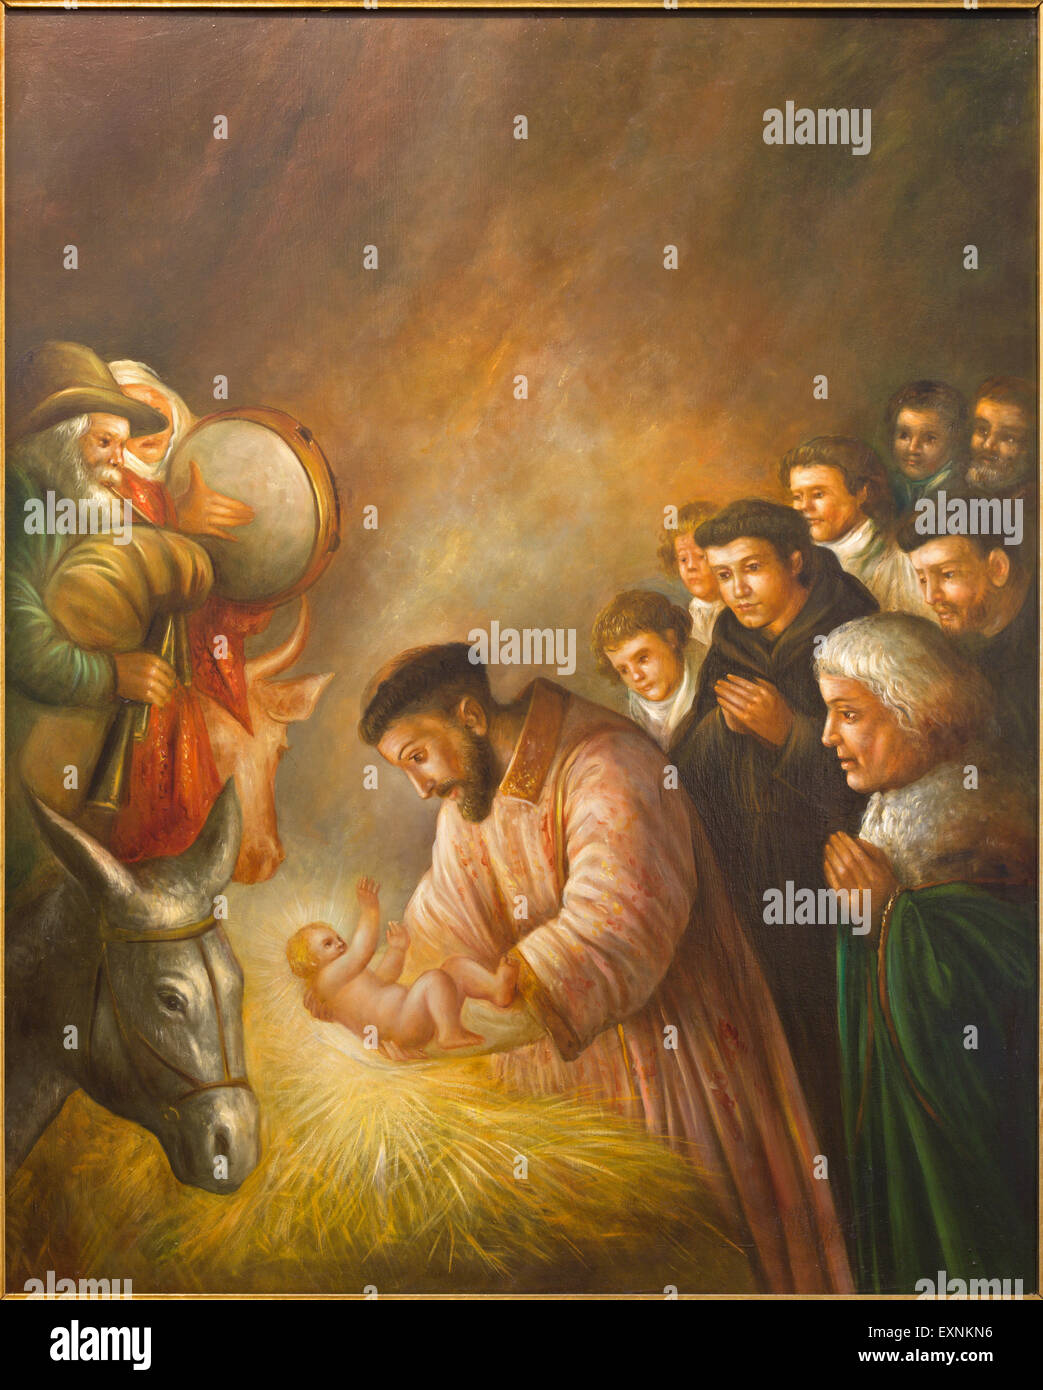 CORDOBA, España - 27 de mayo de 2015: la pintura moderna de st. Francisco de Asís en la escena de la Natividad por artista desconocido de 20.%. Foto de stock